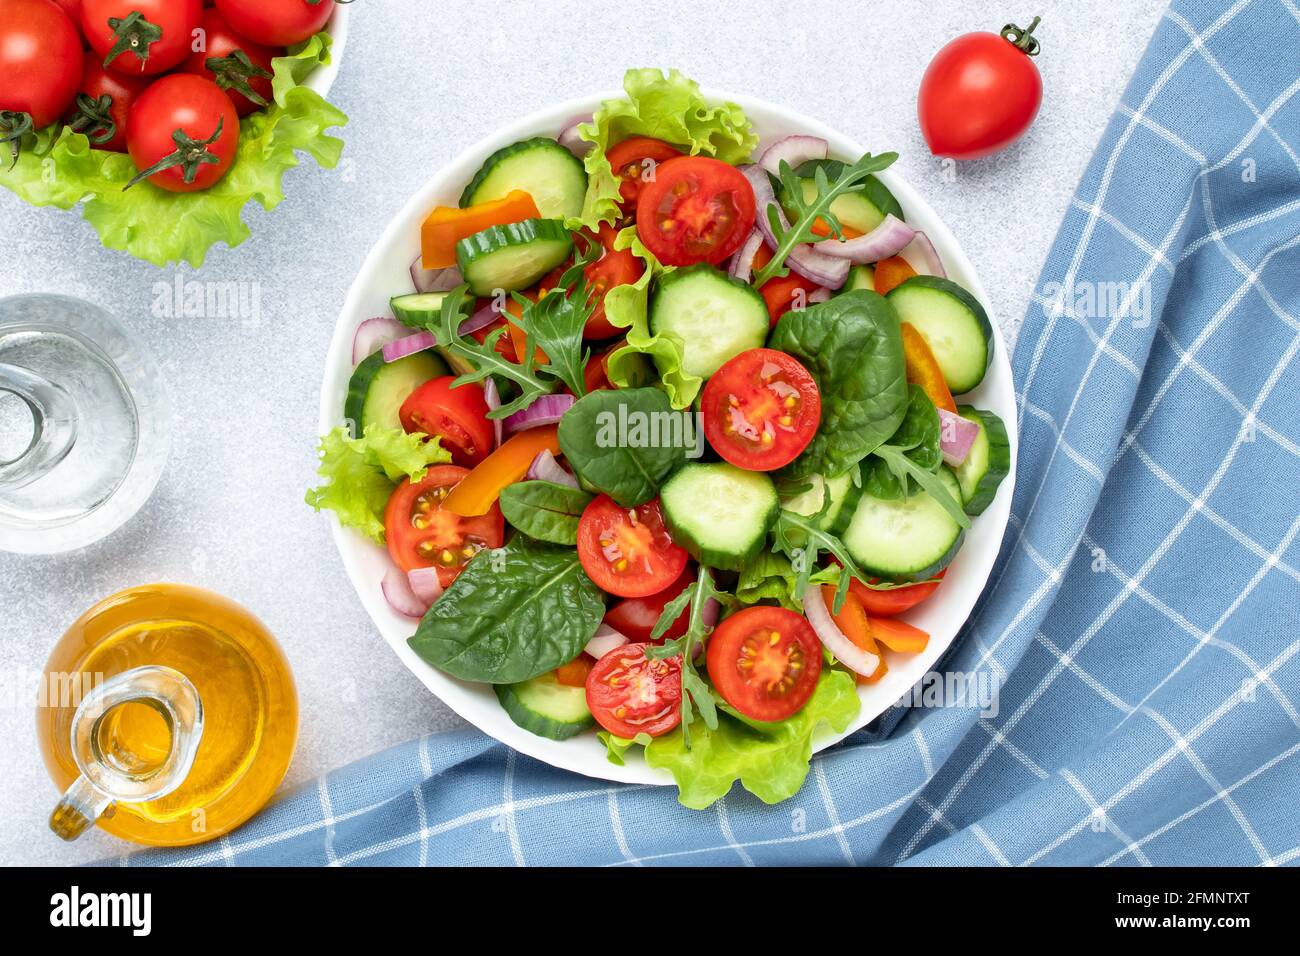 Sommer Gemüsesalat mit Kirschtomaten, Gurken, Rucola, Basilikum und mit Olivenöl gewürzt. Blau karierte Serviette auf einem grauen Tisch. Blick von einem Stockfoto